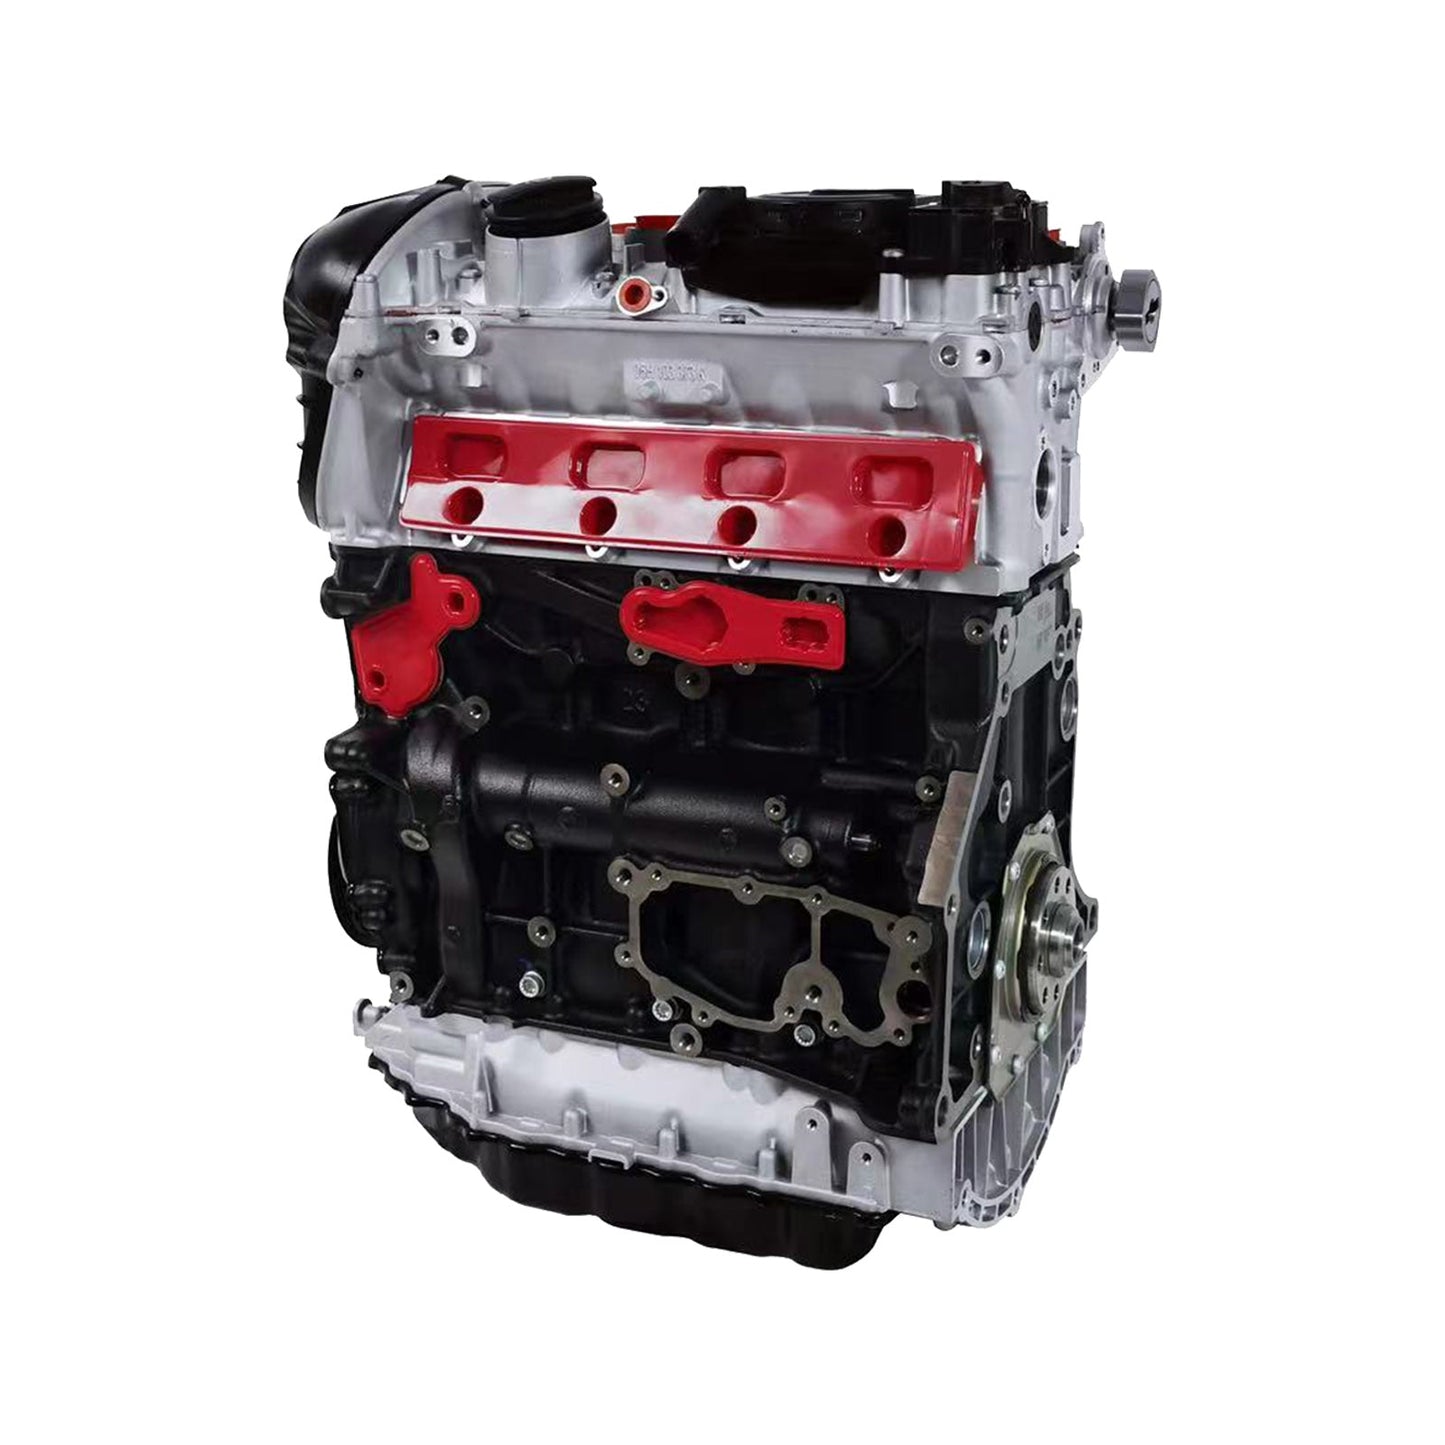 EA888 GEN2 CDA 1.8T Gasoline Engine Motor 06J100035J 06J100037 For Golf Passat